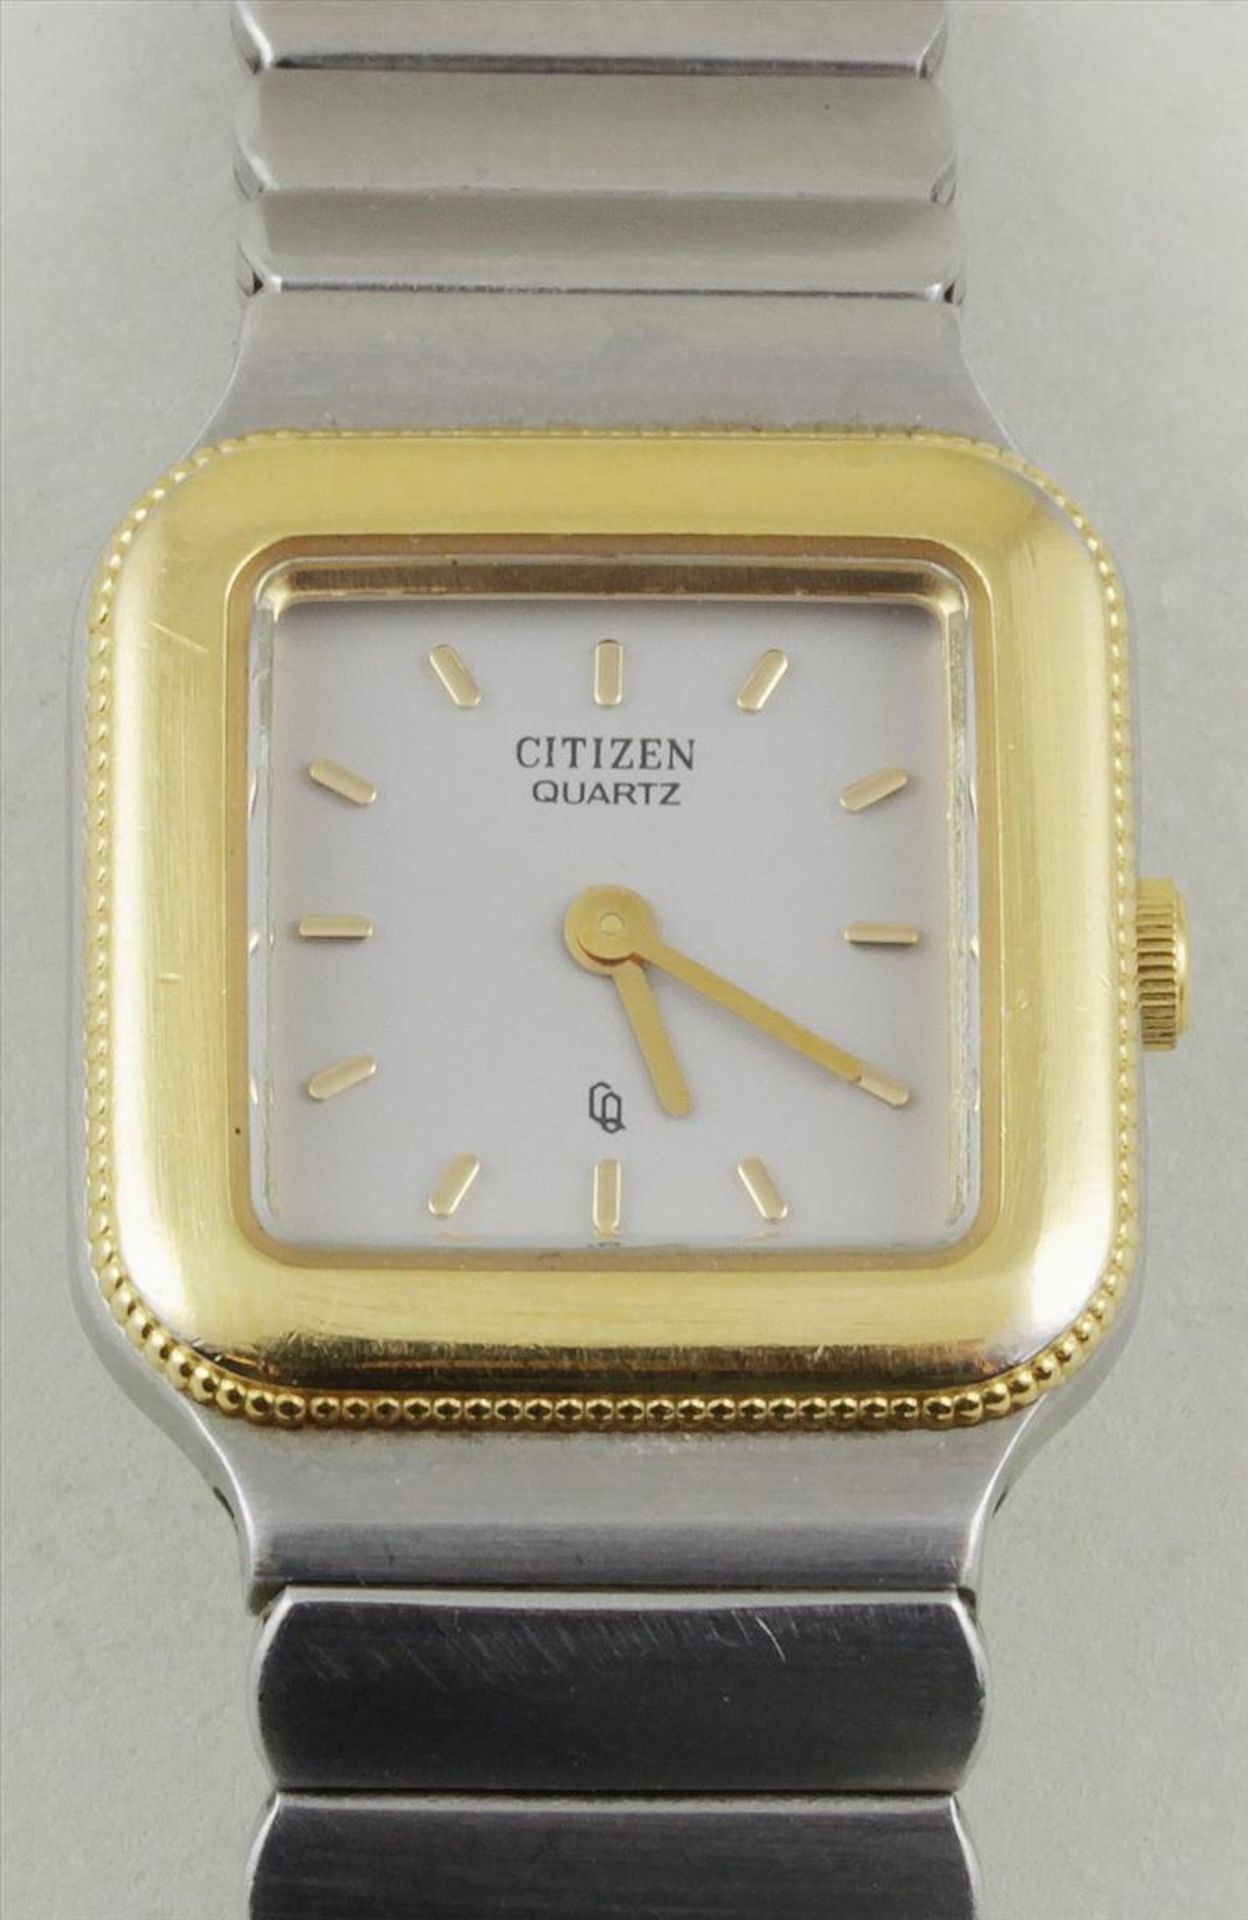 Damenarmbanduhr "Citizen".Quadratisches Gehäuse und Ansatzband aus Stahl, Lunette vergoldet.